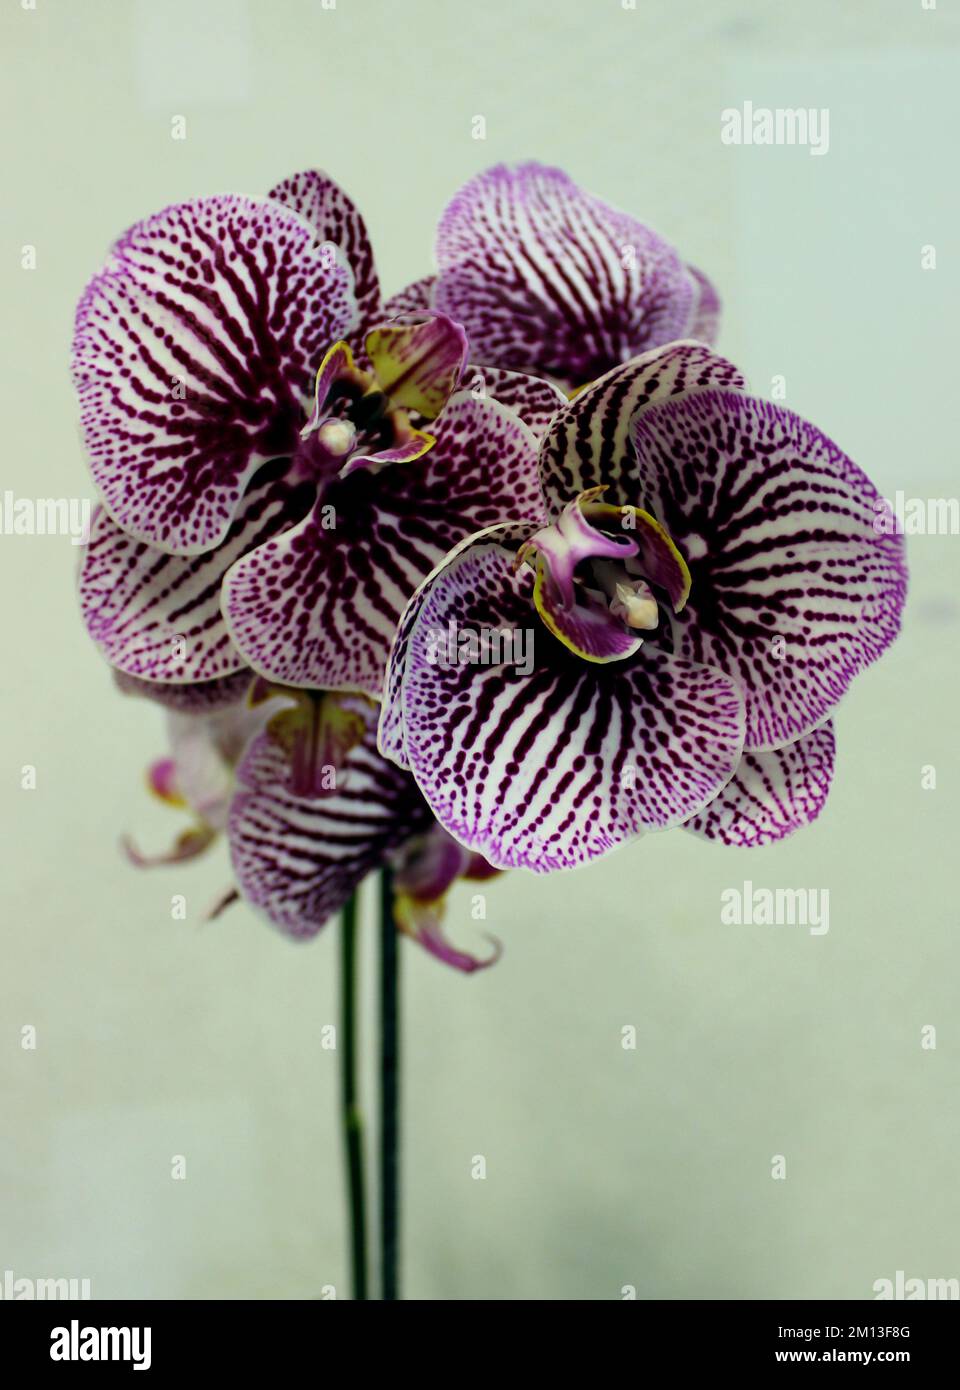 Fiori di orchidea a righe bianche e viola con stami gialli su Un gambo verticale foto d'archivio Foto Stock